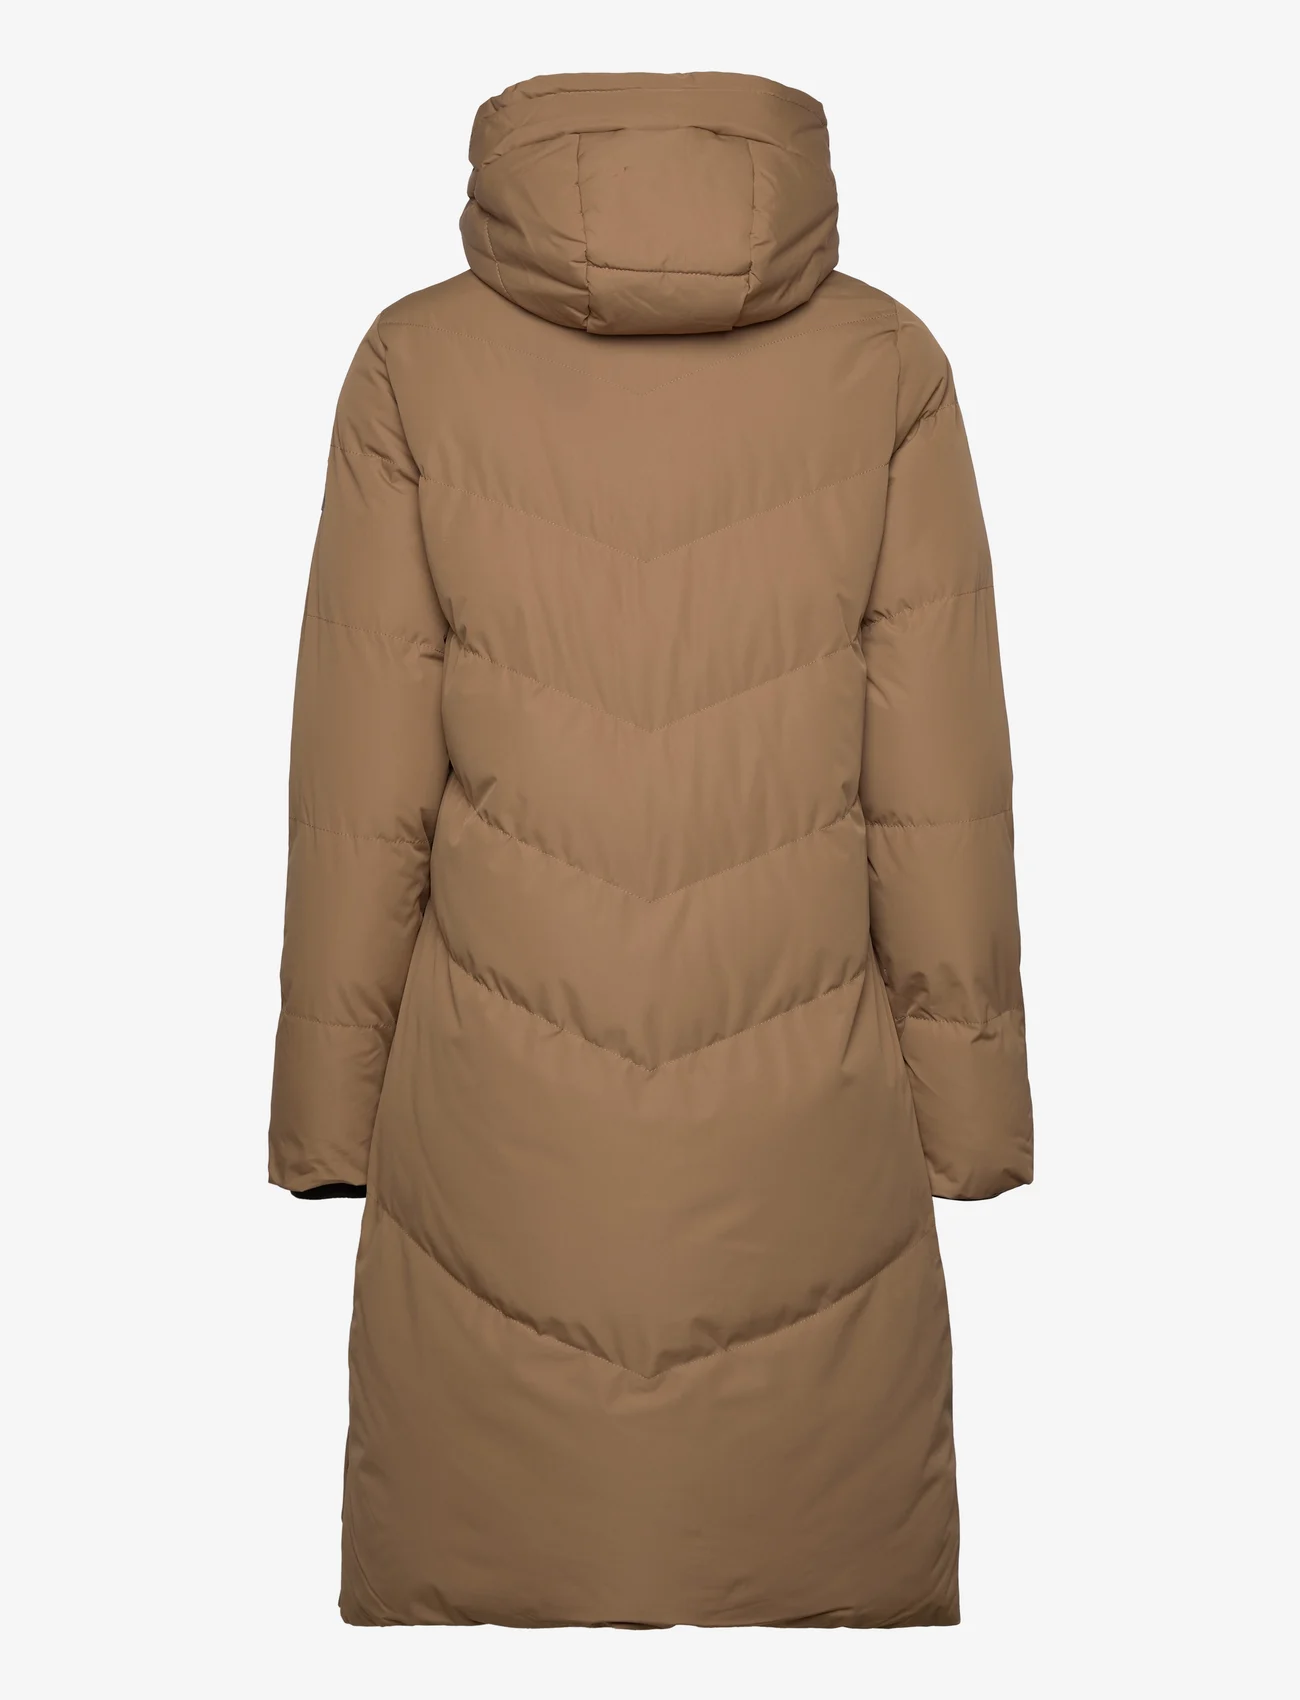 Garcia - ladies outdoor jackets - vinterjackor - brown - 1